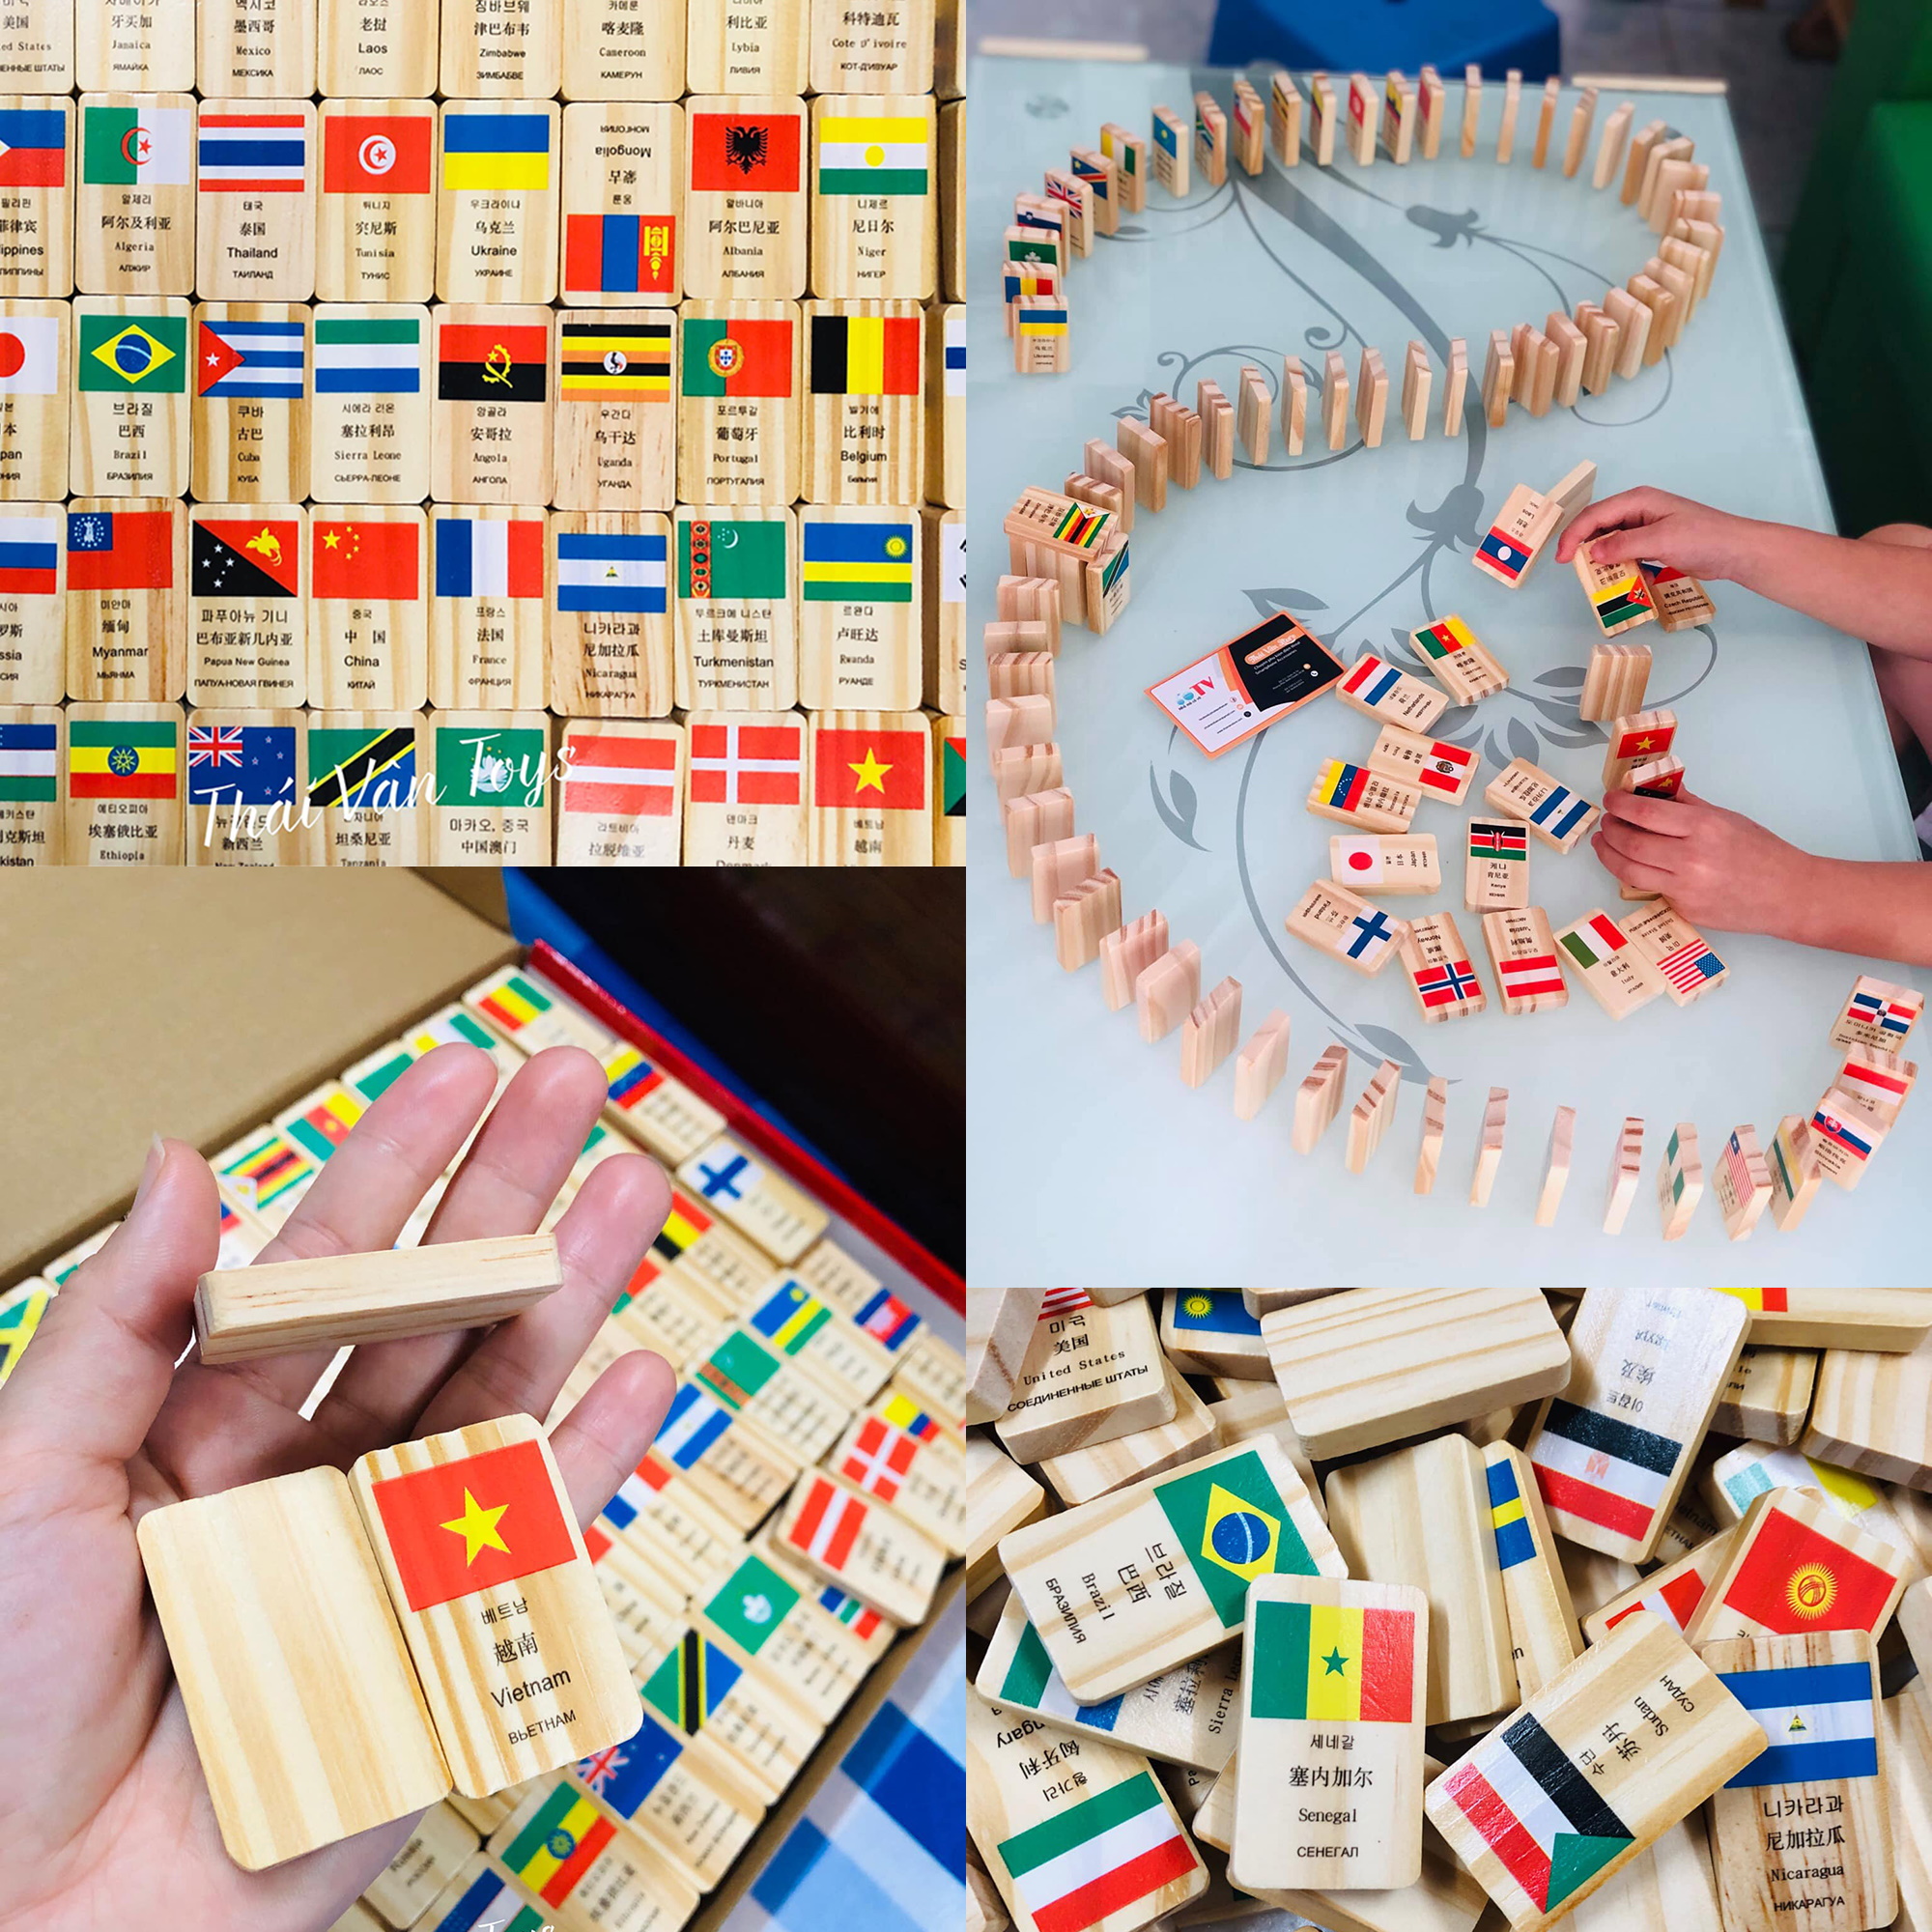 Bộ Domino cờ các nước | Trò chơi xếp cờ Domino 100 quốc gia bằng gỗ cho bé | Đồ chơi xếp gỗ tạo hiệu ứng Domino in hình lá cờ nhiều nước